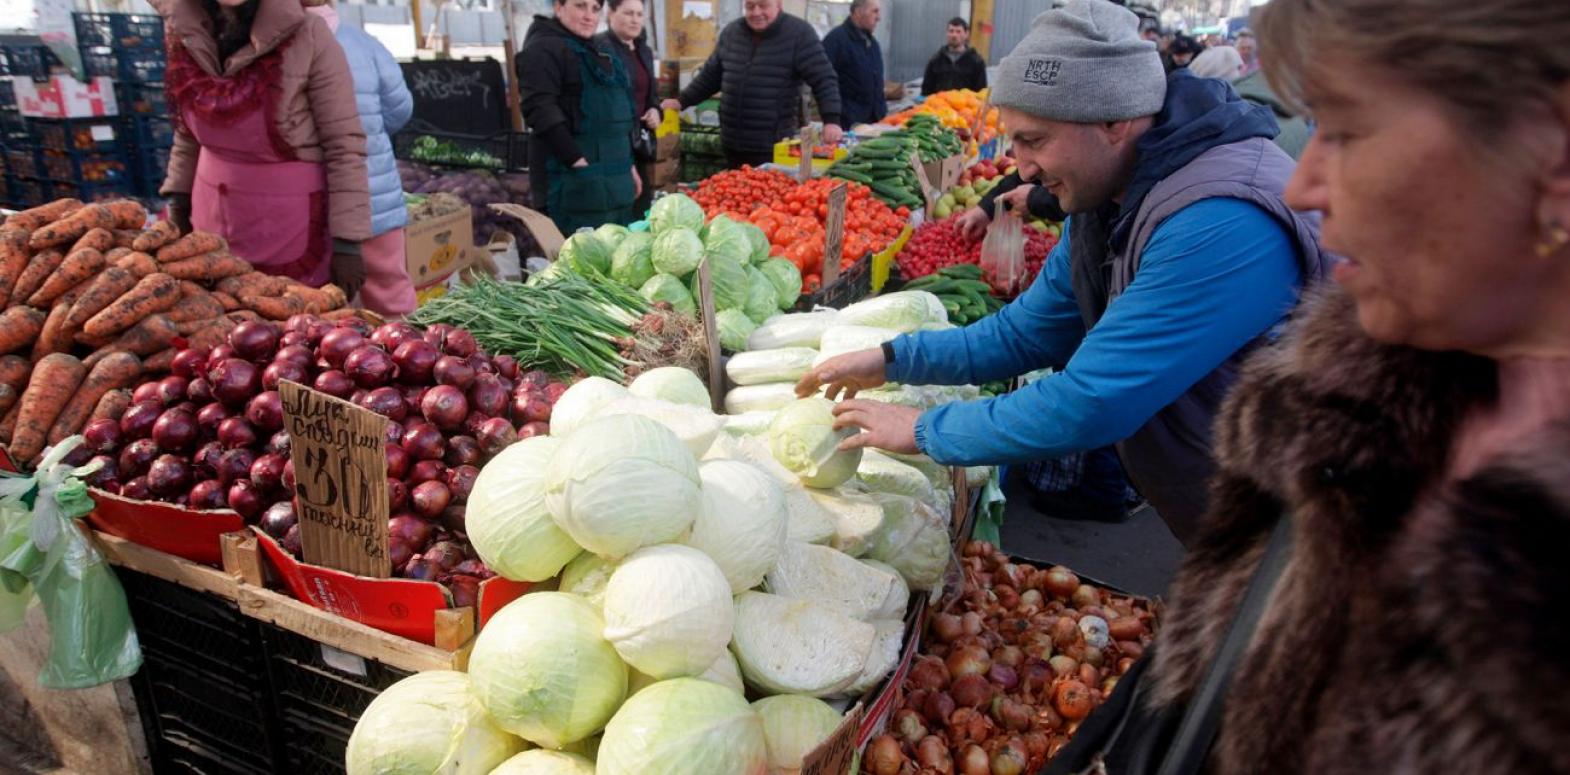 Овощи, яйца и гречка, подешевели: как изменились цены в Украине за месяц